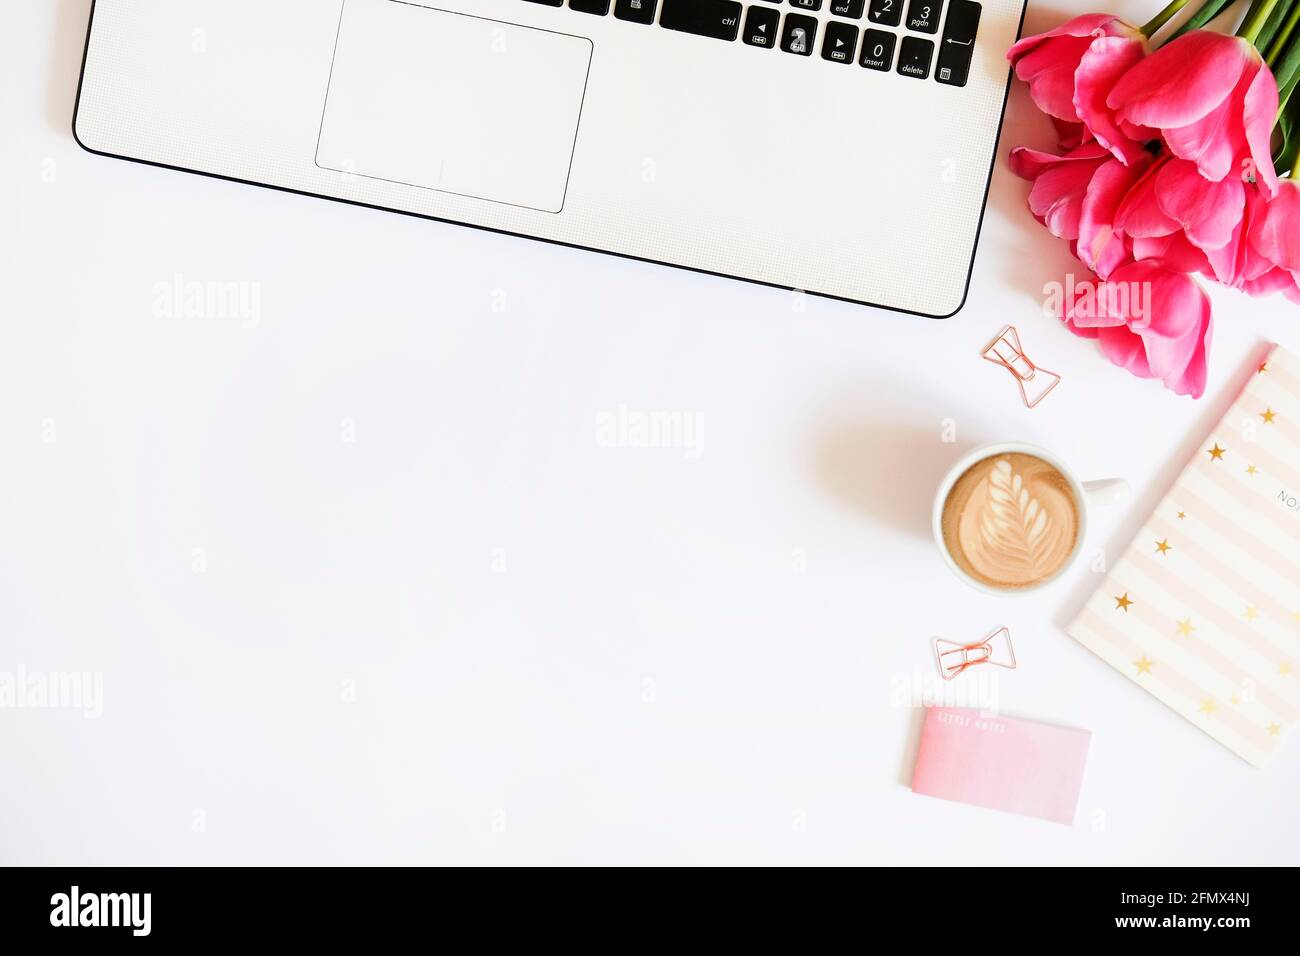 Femininer Büro-Desktop mit schwarz-weißer Laptop-Tastatur, rosa Tulpenblüten-Bouquet, Tasse Kaffee mit Latte Art, Stift, Notebook-Computer, verschiedene Su Stockfoto